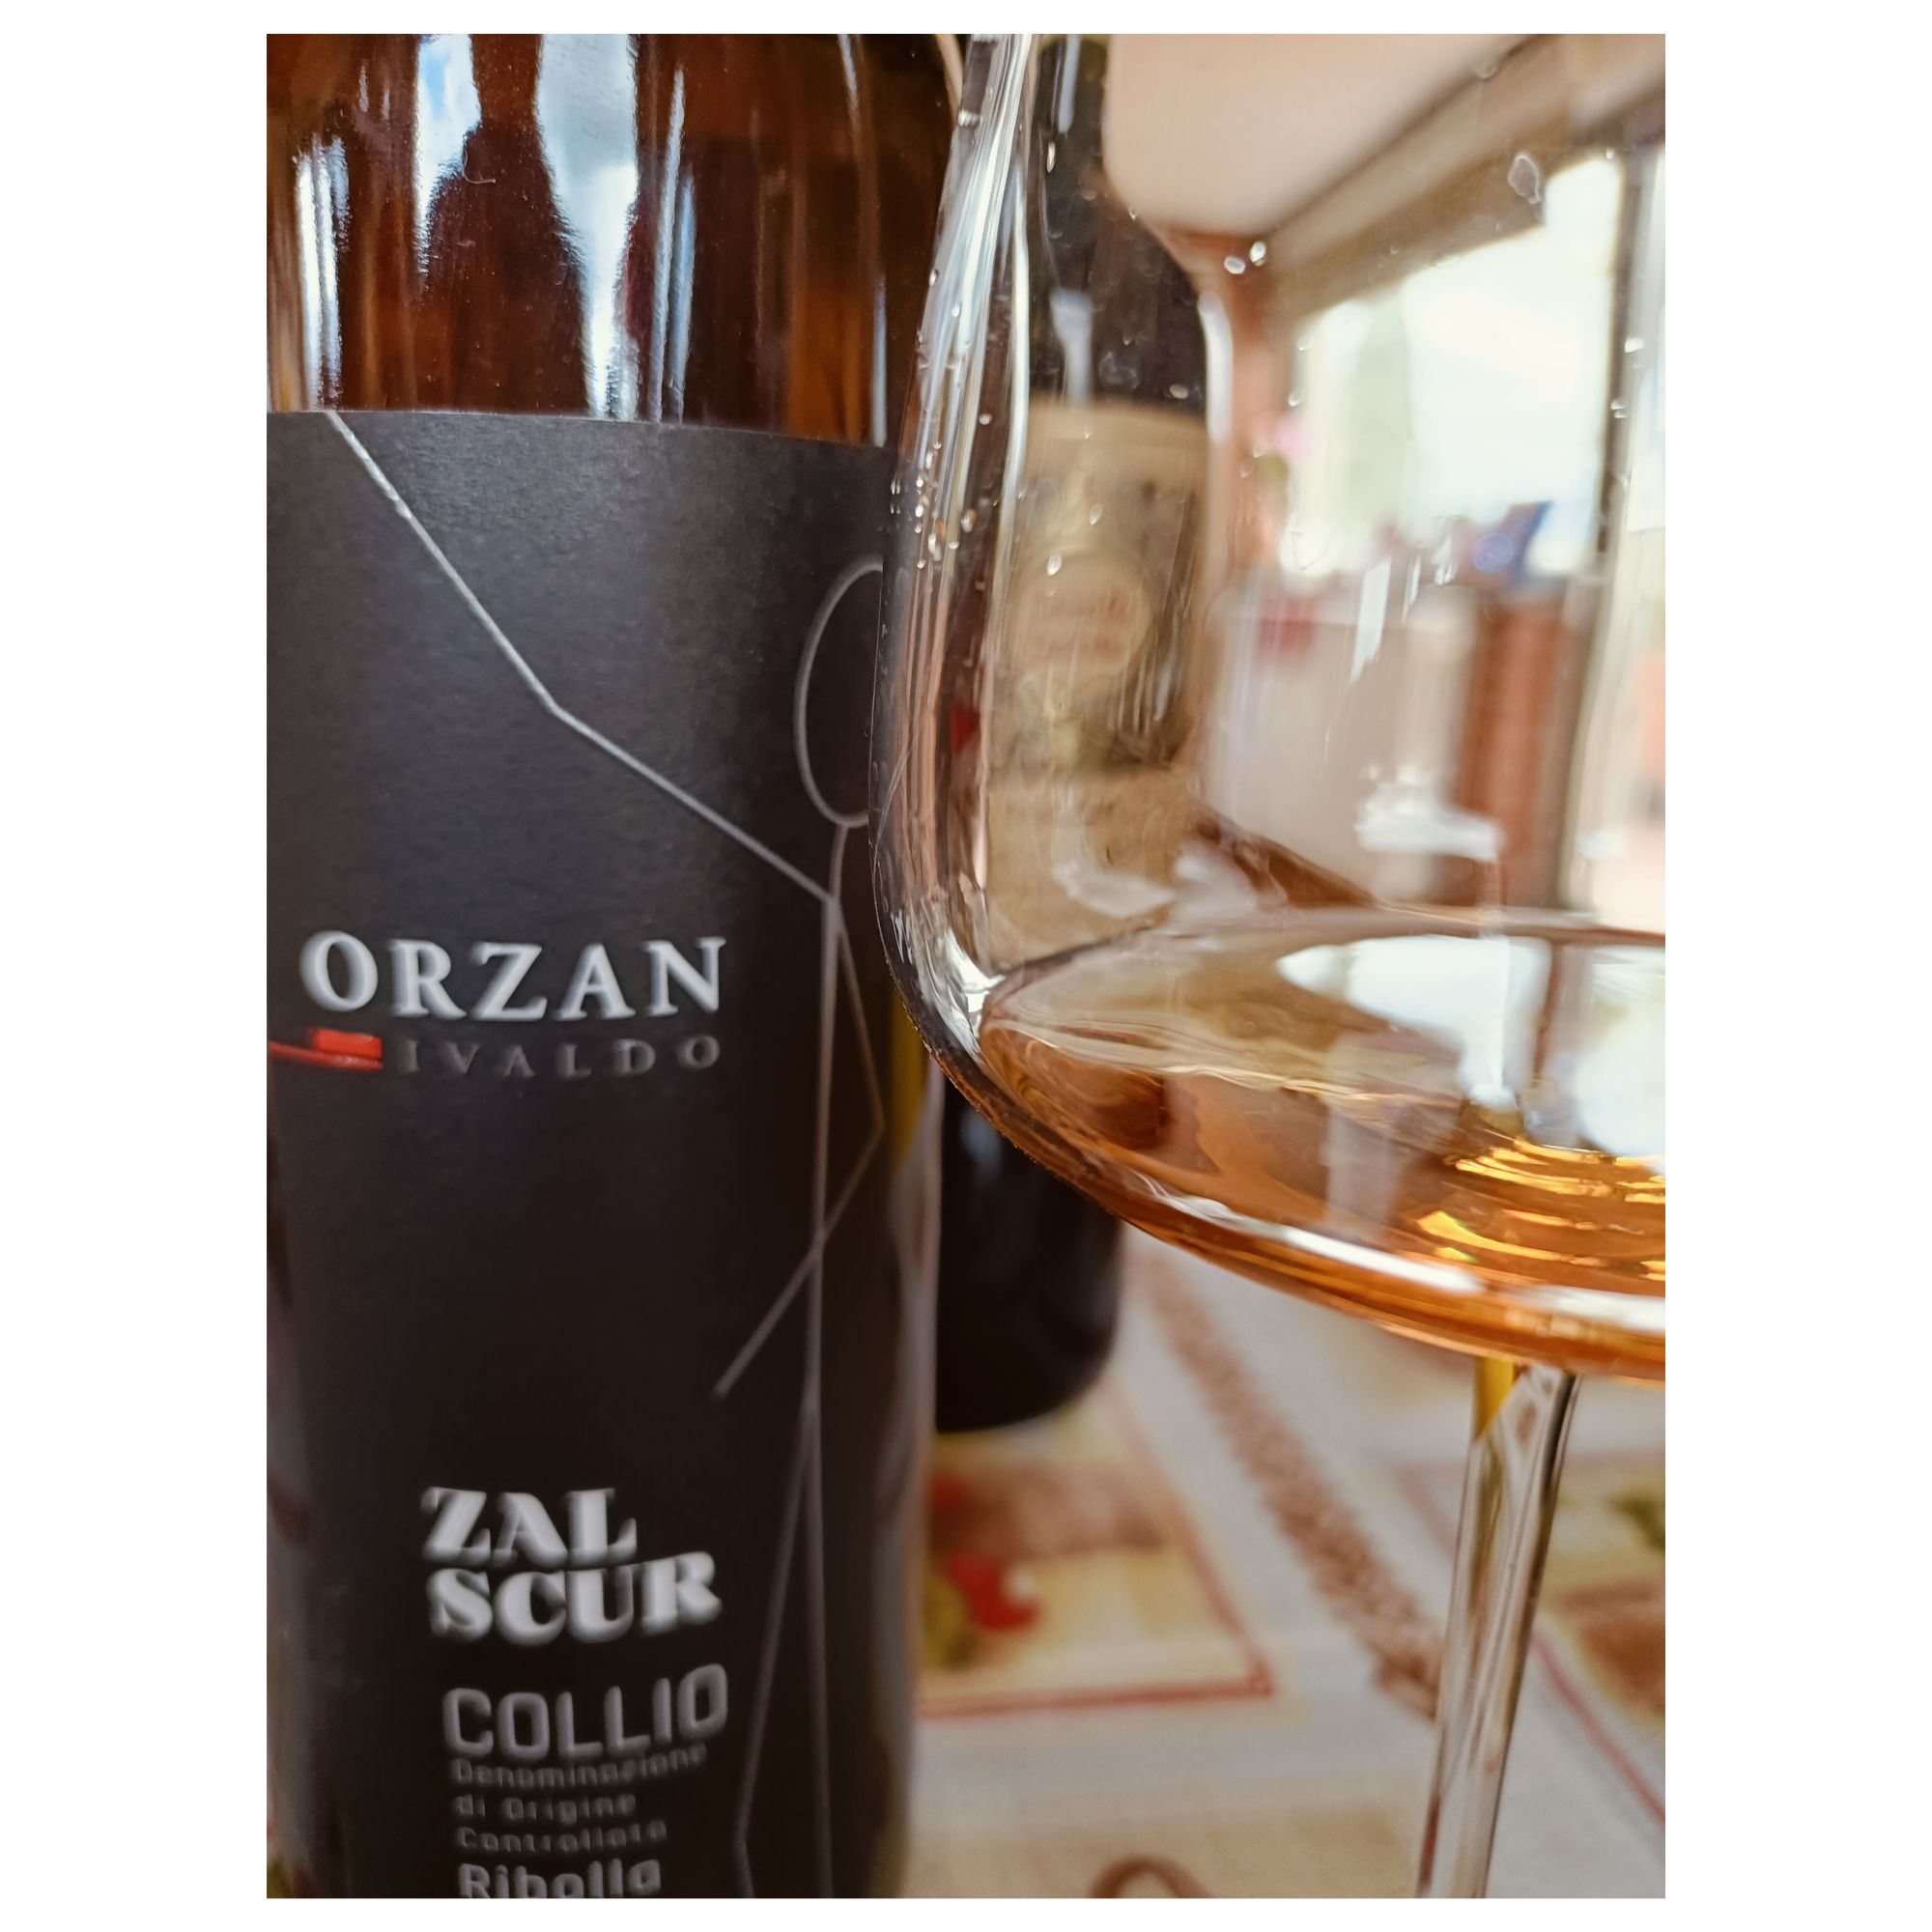 Enonauta/Degustazione di Vino #410 - review - Zal Scur 2016 - Ivaldo Orzan | ottima ribolla macerata da Capriva del Friuli